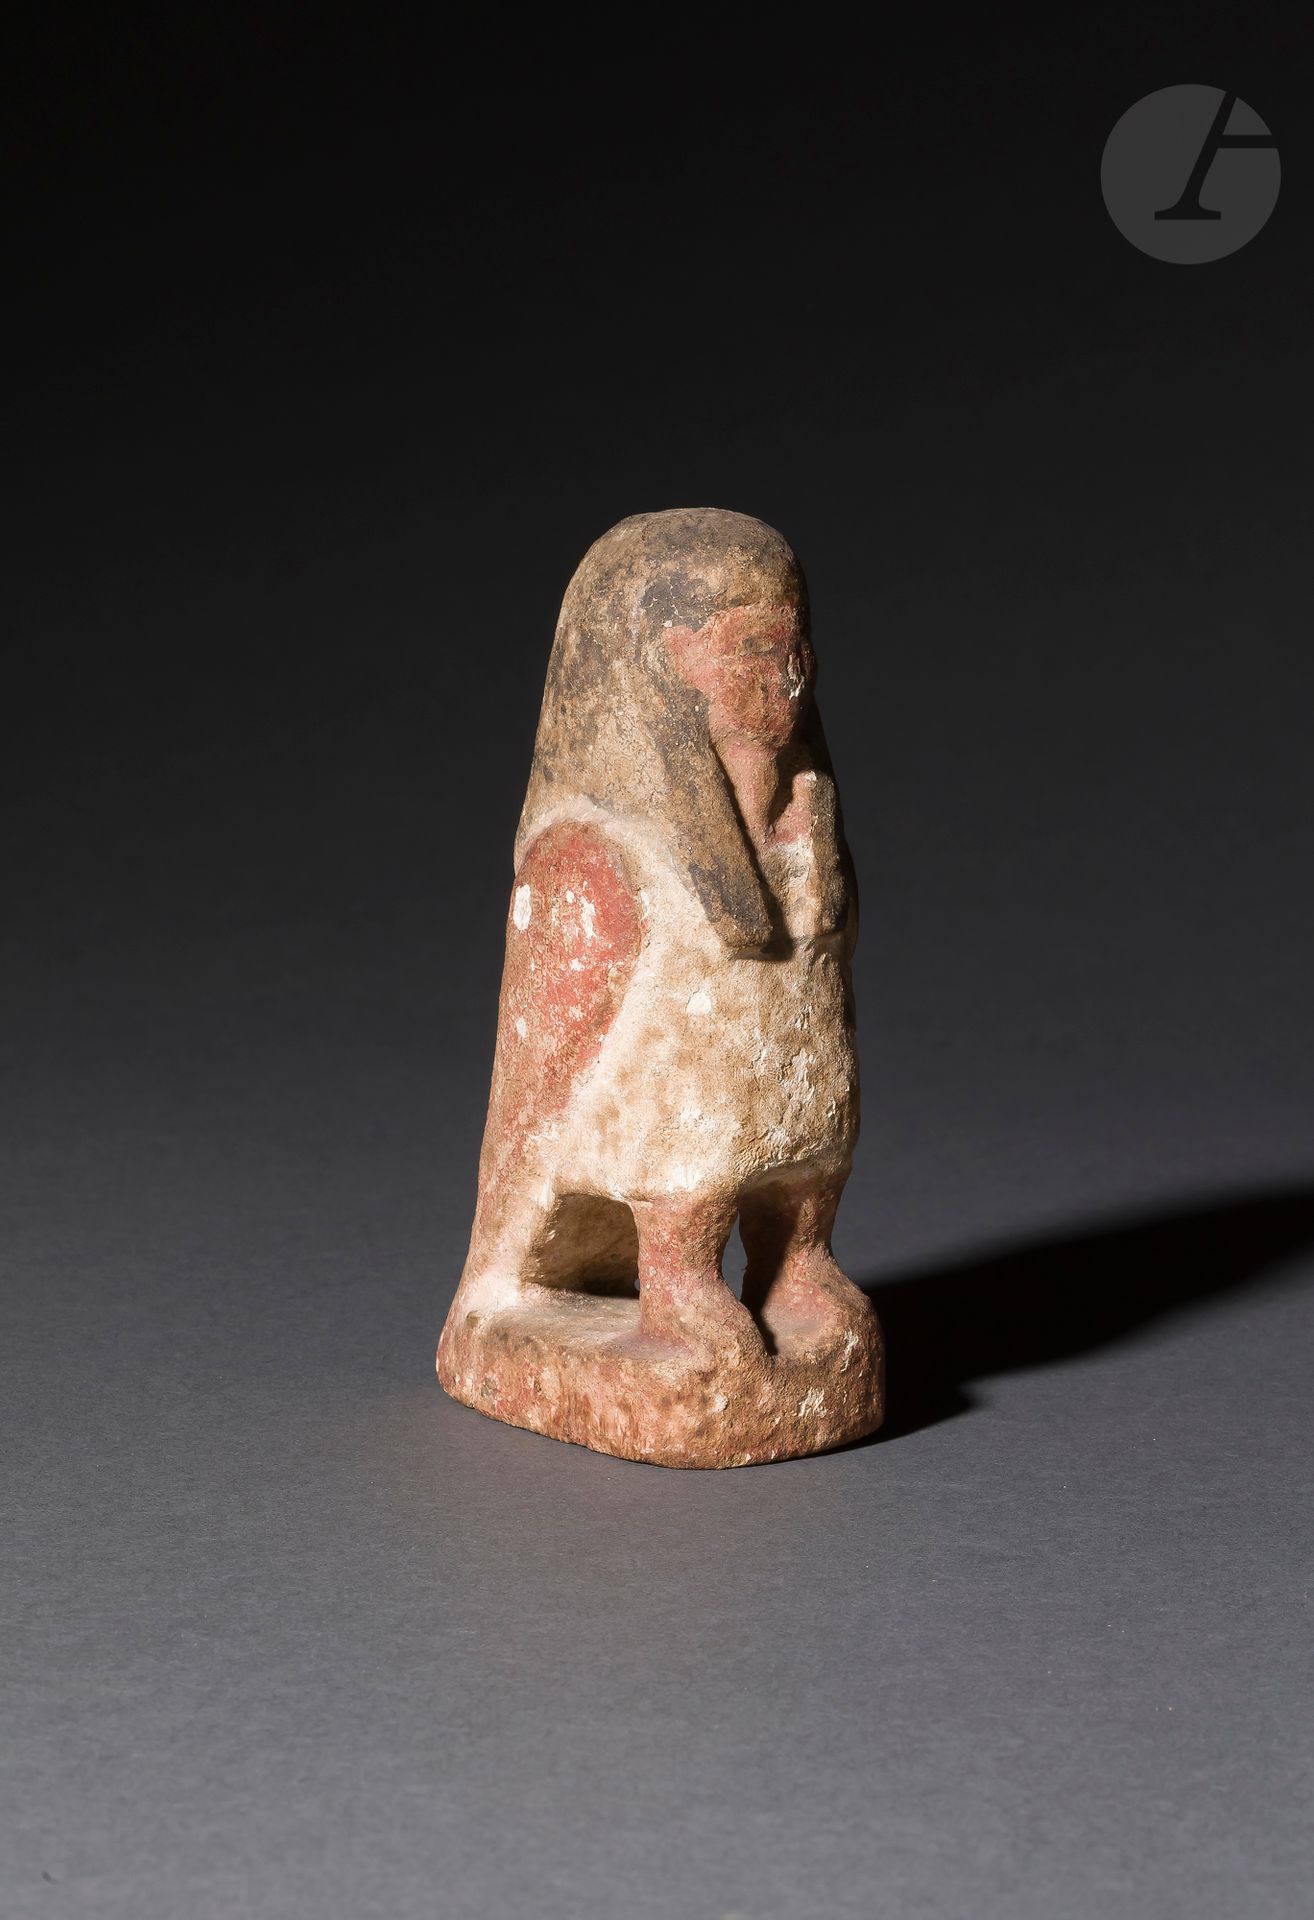 Null 代表Bâ鸟用前腿站立的雕像
粉刷和多色木材。
埃及，晚期（公元前664-332年）。
高度：14.5厘米

埃及木制巴鸟雕像，晚期作品